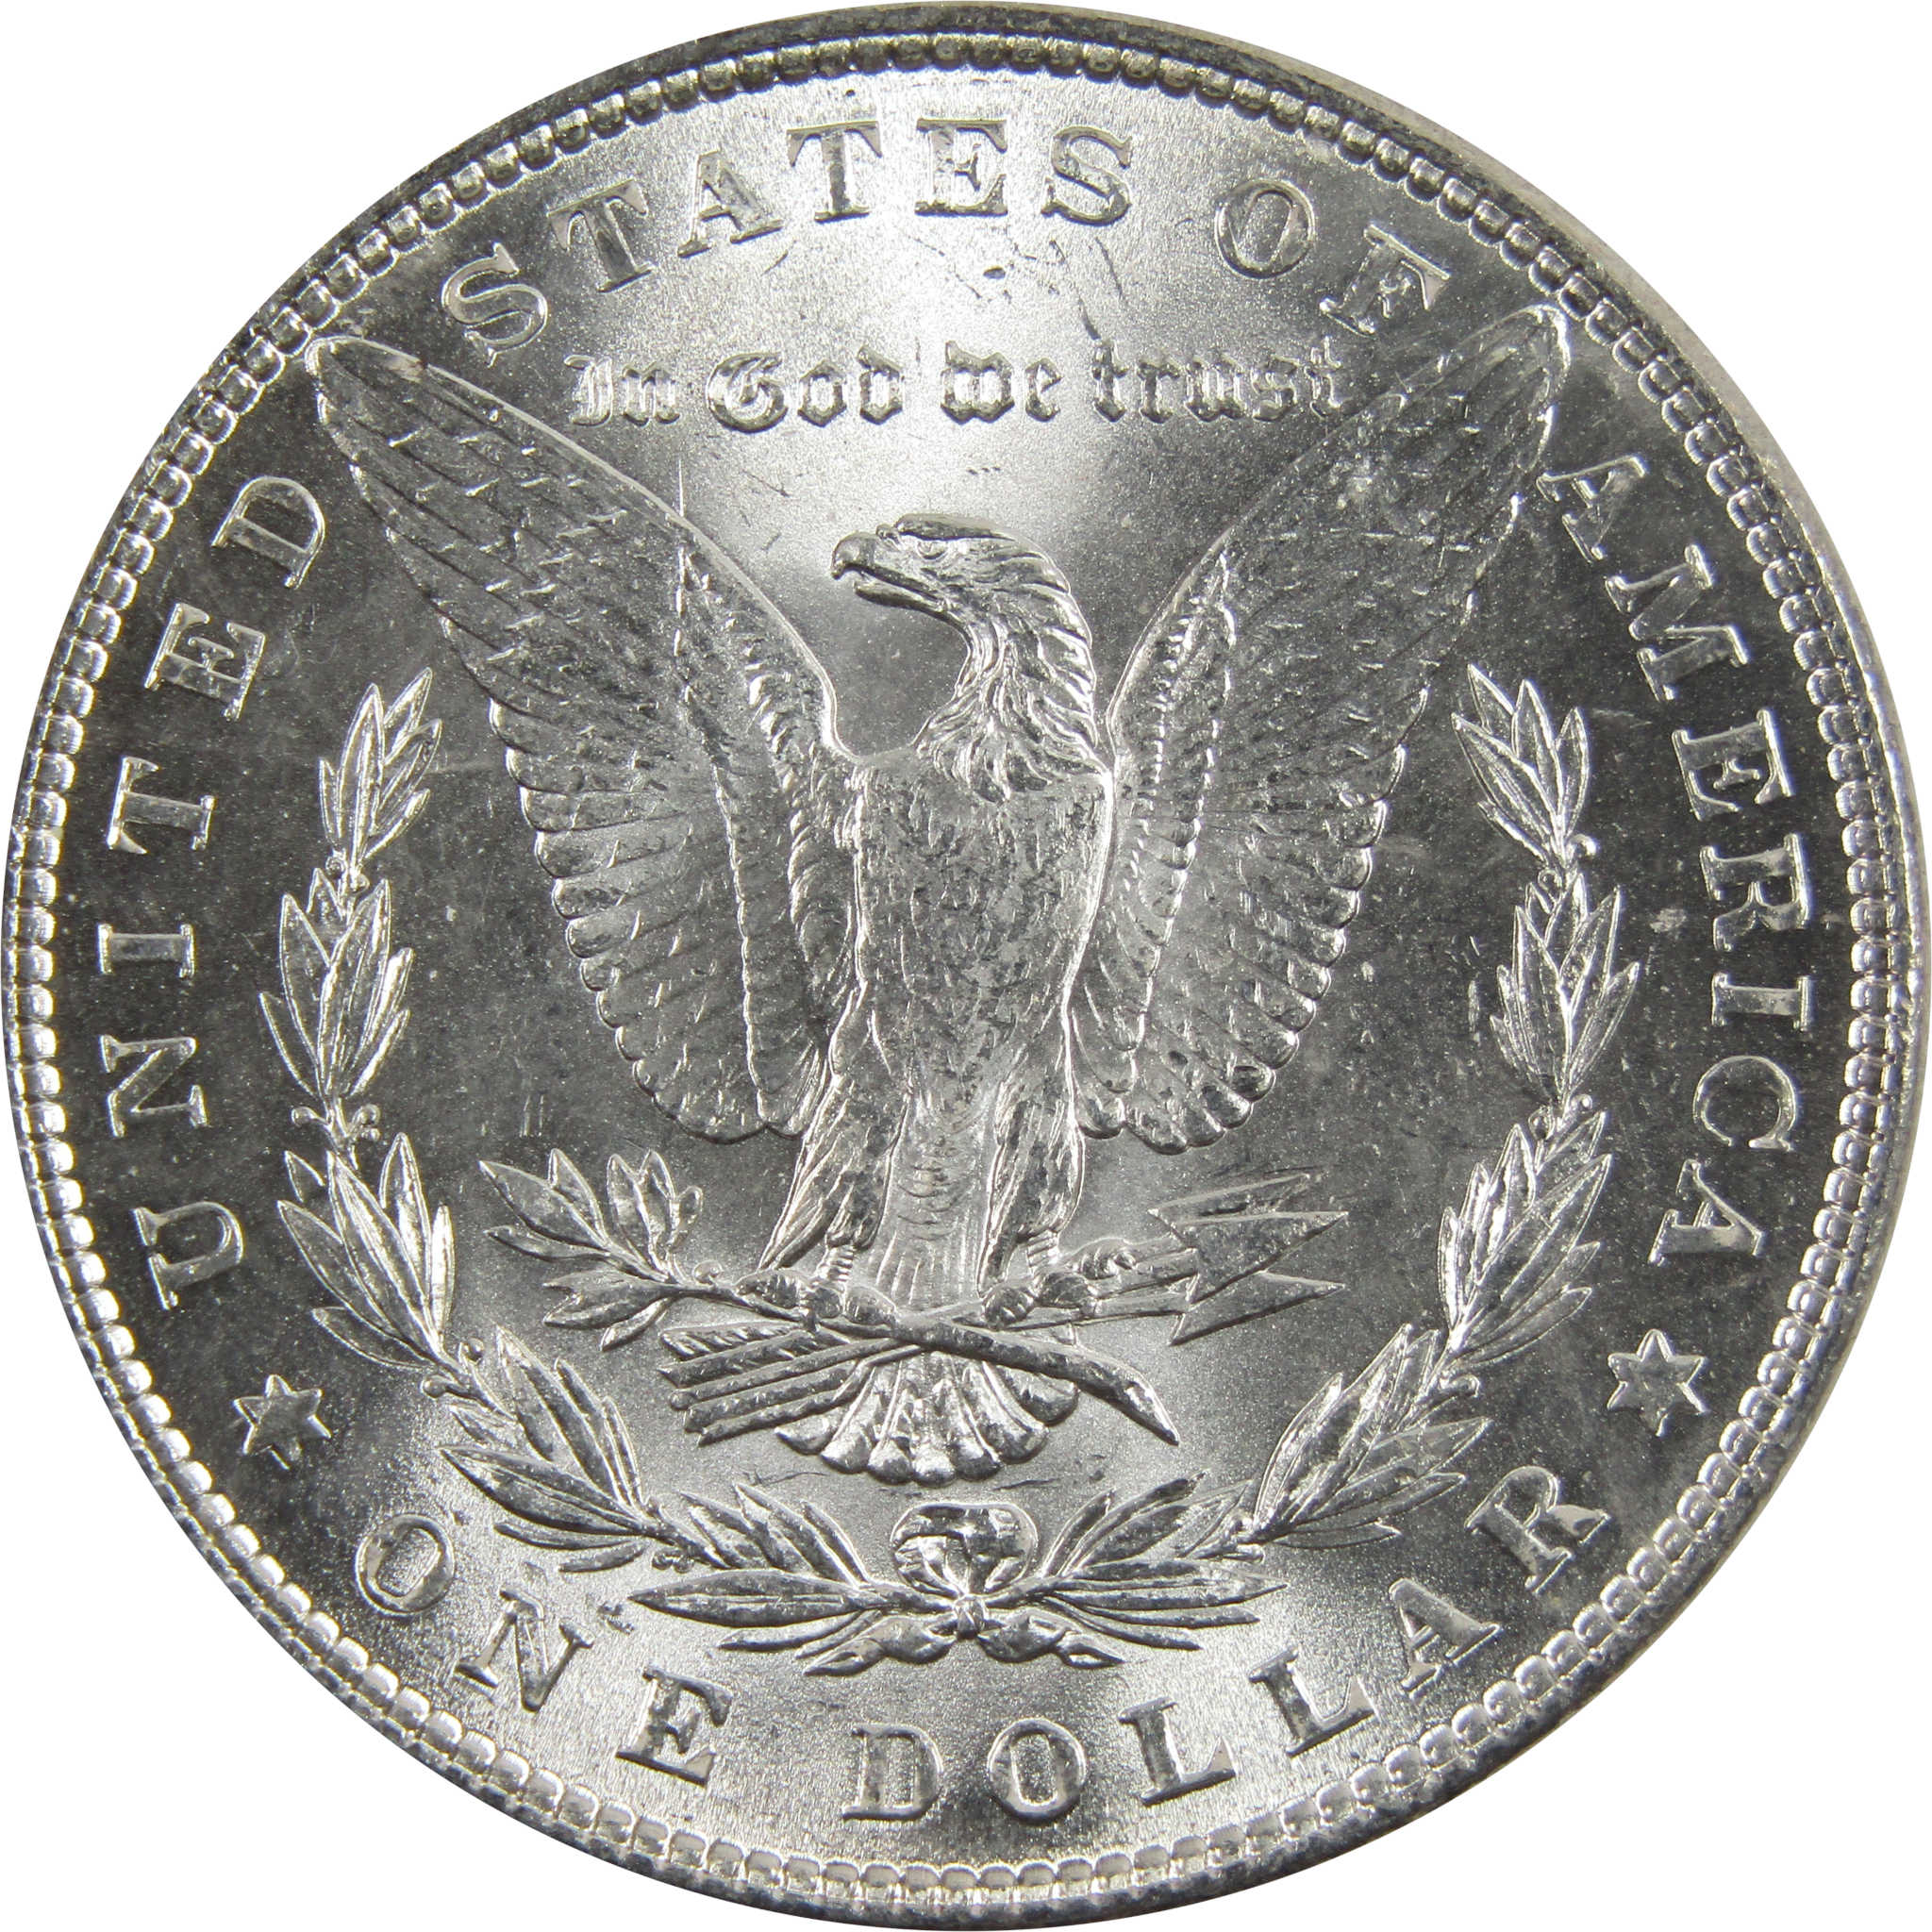 1883 Morgan Dollar BU Uncirculated 90% Silver $1 Coin SKU:I5171 - Morgan coin - Morgan silver dollar - Morgan silver dollar for sale - Profile Coins &amp; Collectibles